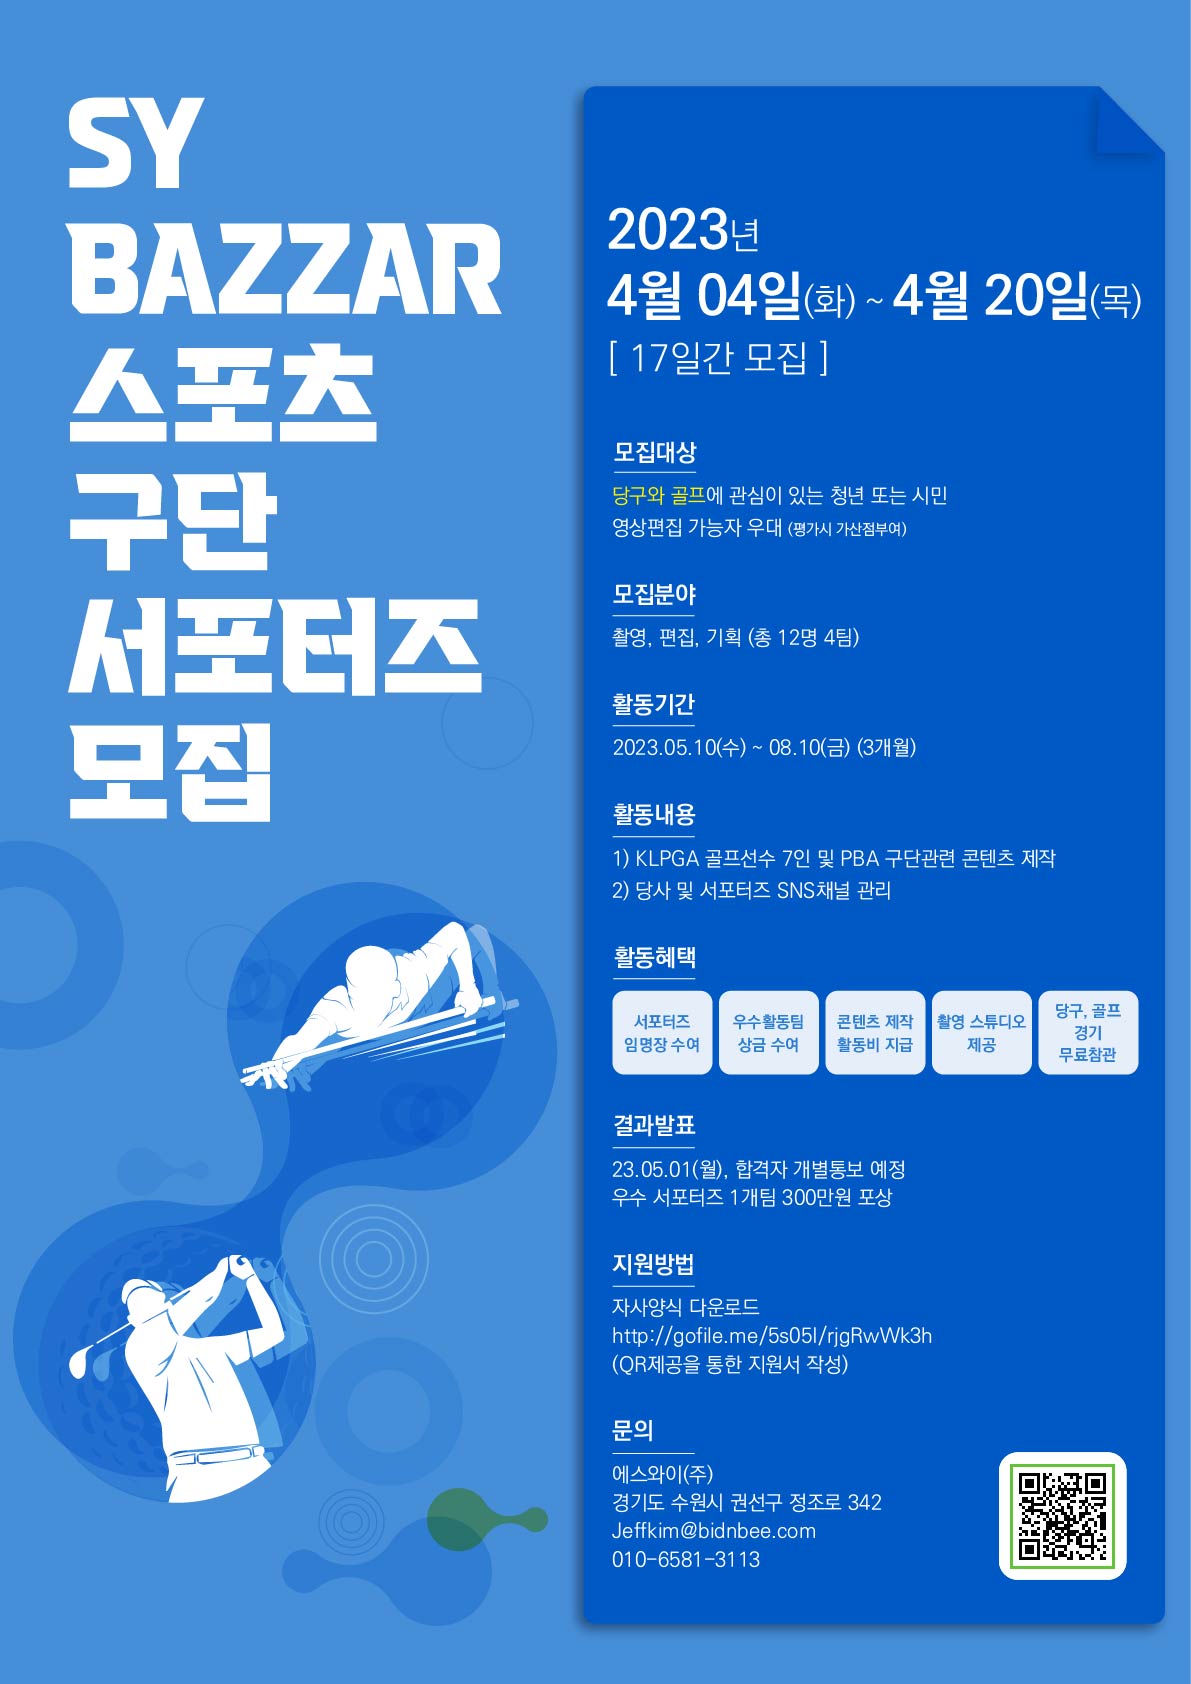 SY BAZZAR 스포츠구단 서포터즈 모집